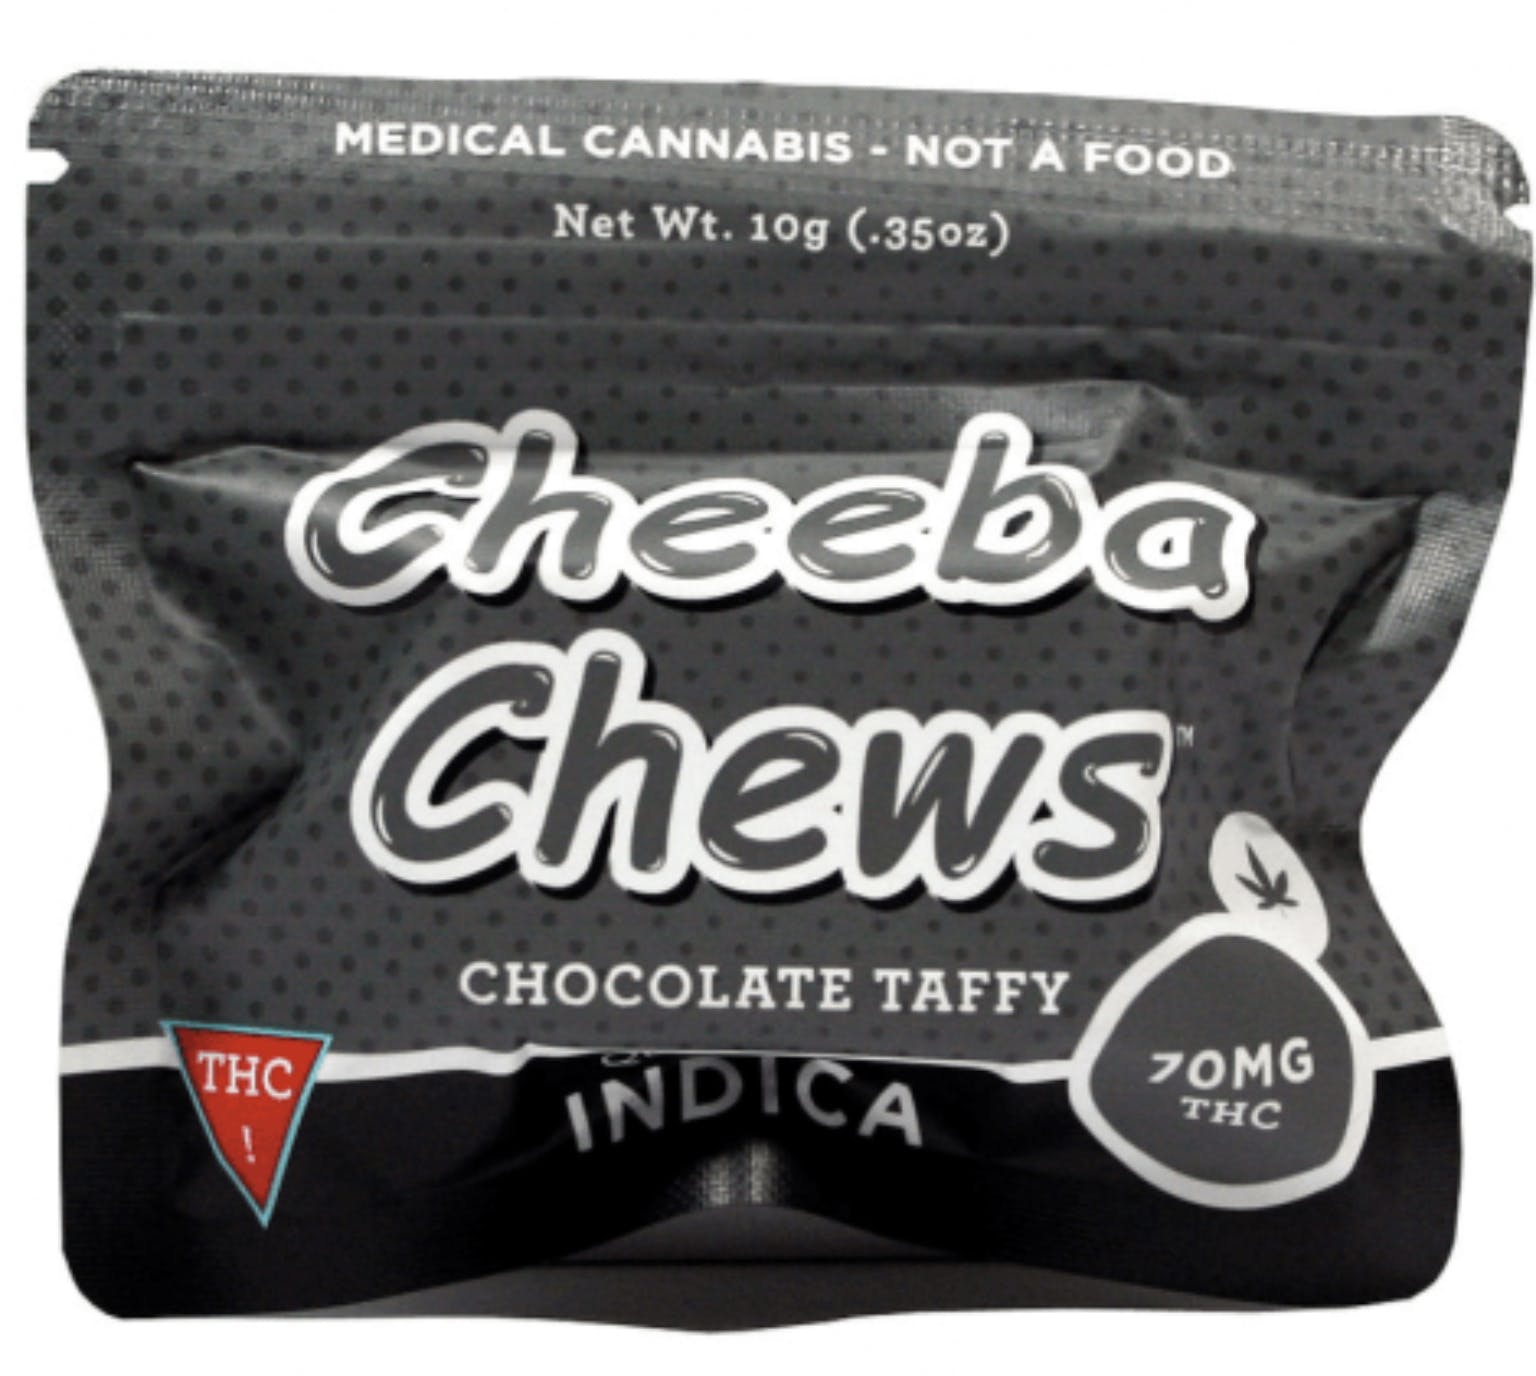 edible-cheeba-chews-indica-2-40-20